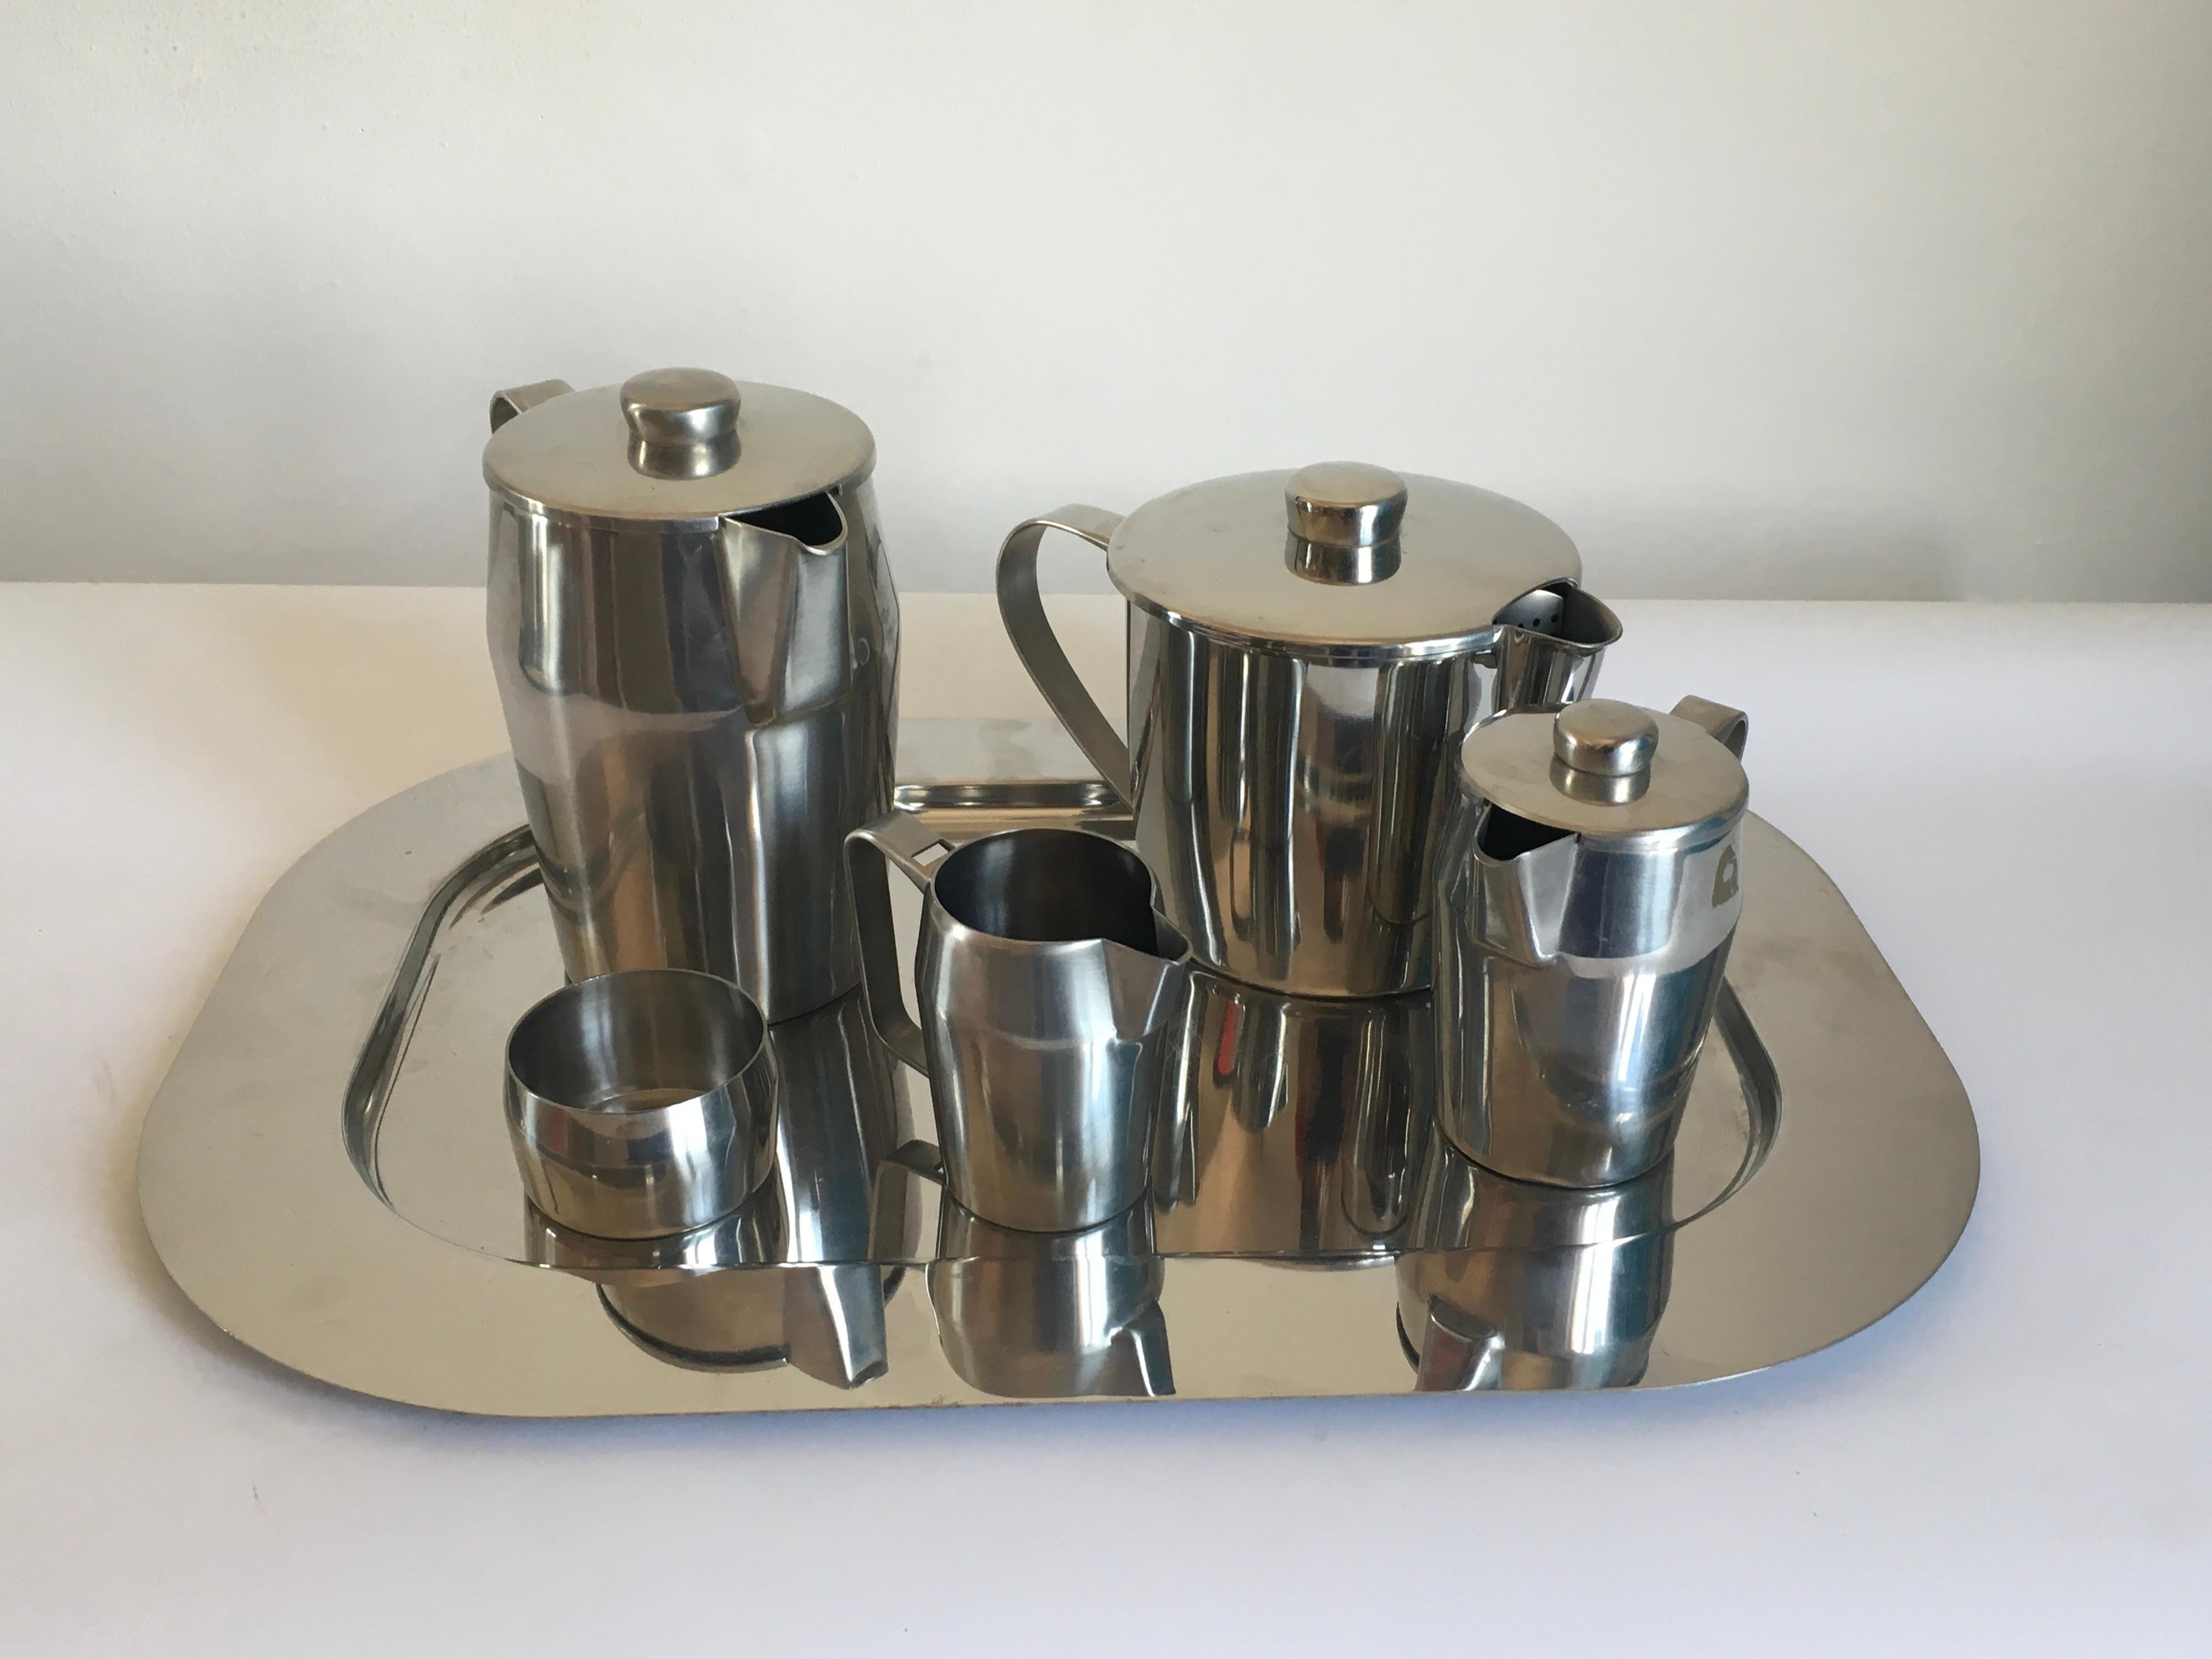 Tea set steel six pieces designed by Gio Ponti for Sambonet, 1970.
Dimensions:
Milk jug 18 cm H x W 20 cm x D 12 cm
Teapot 15 cm H x W 25 cm x D 16 cm.
    